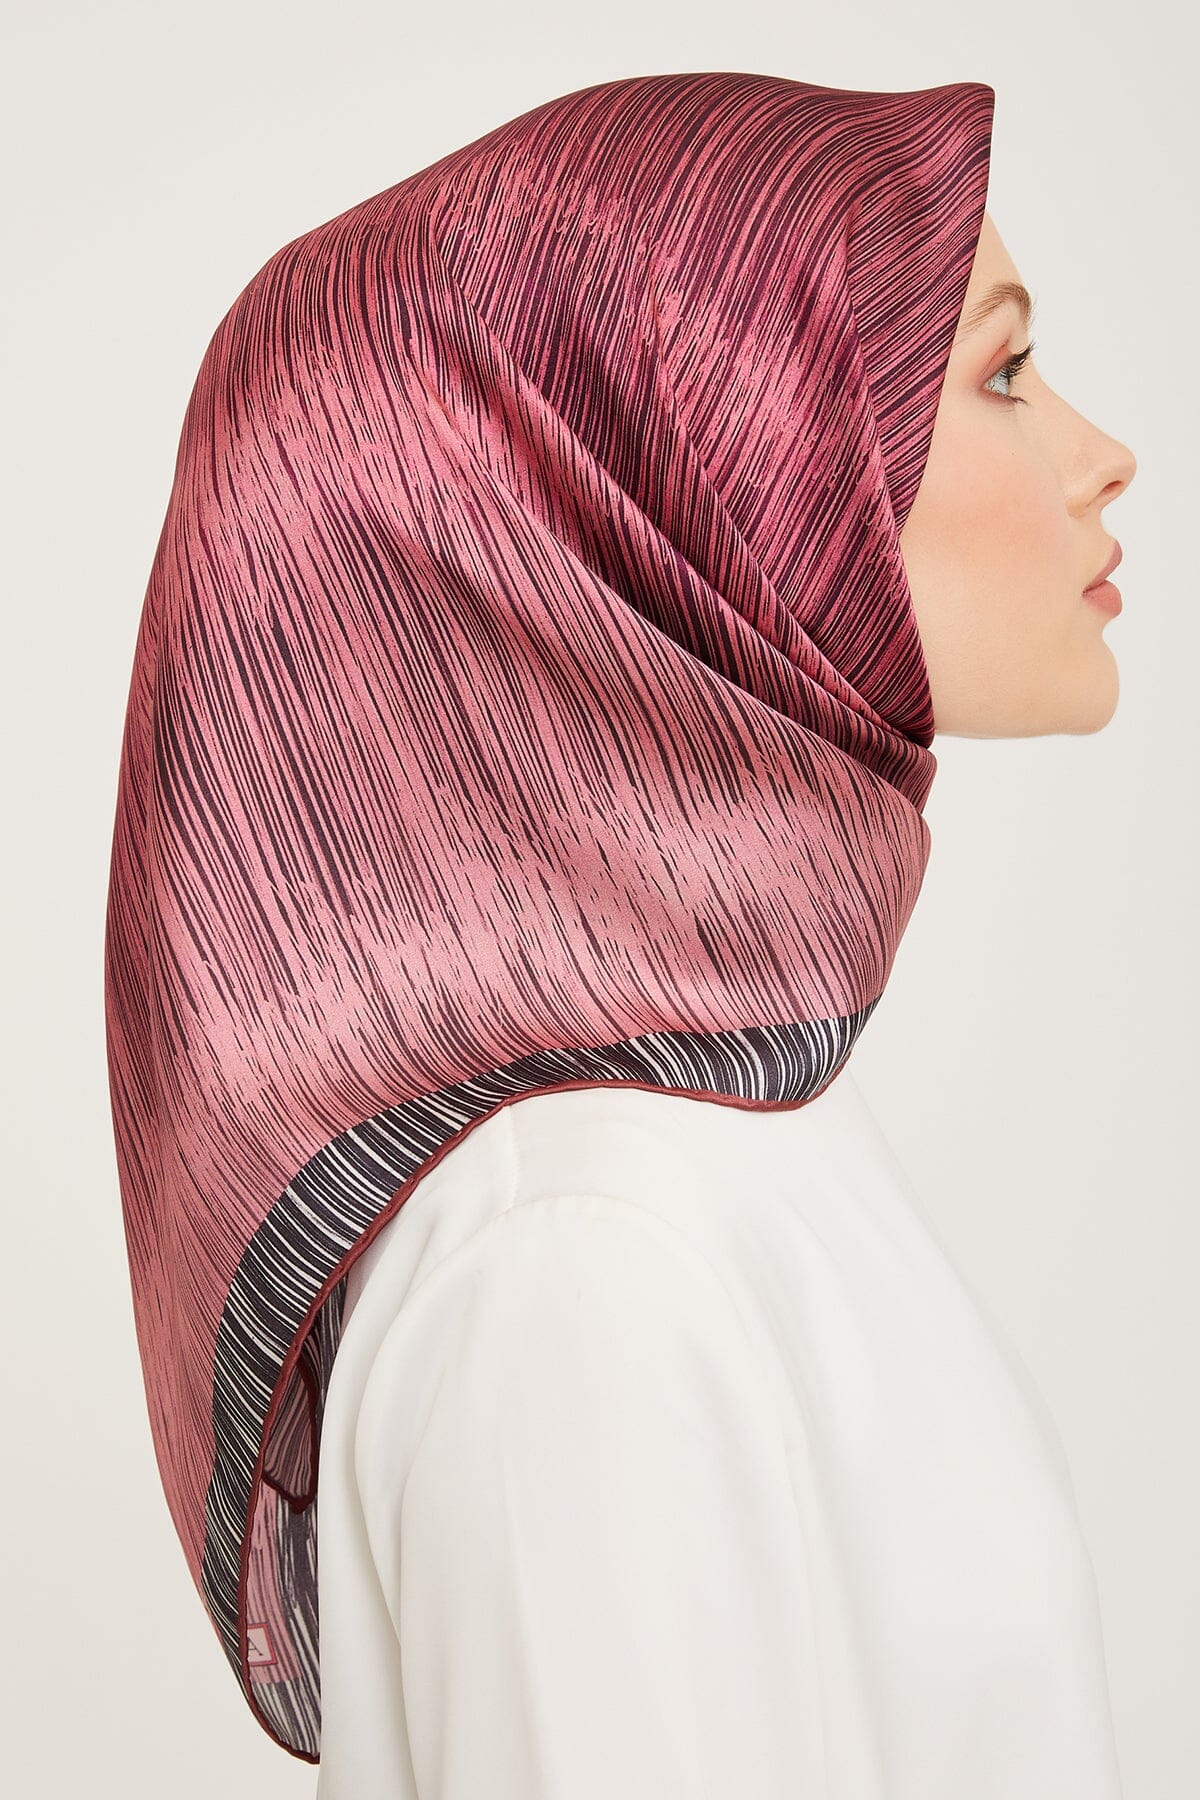 Armine Myers Silk Hair Wrap #33 – HijabPlanet Co.